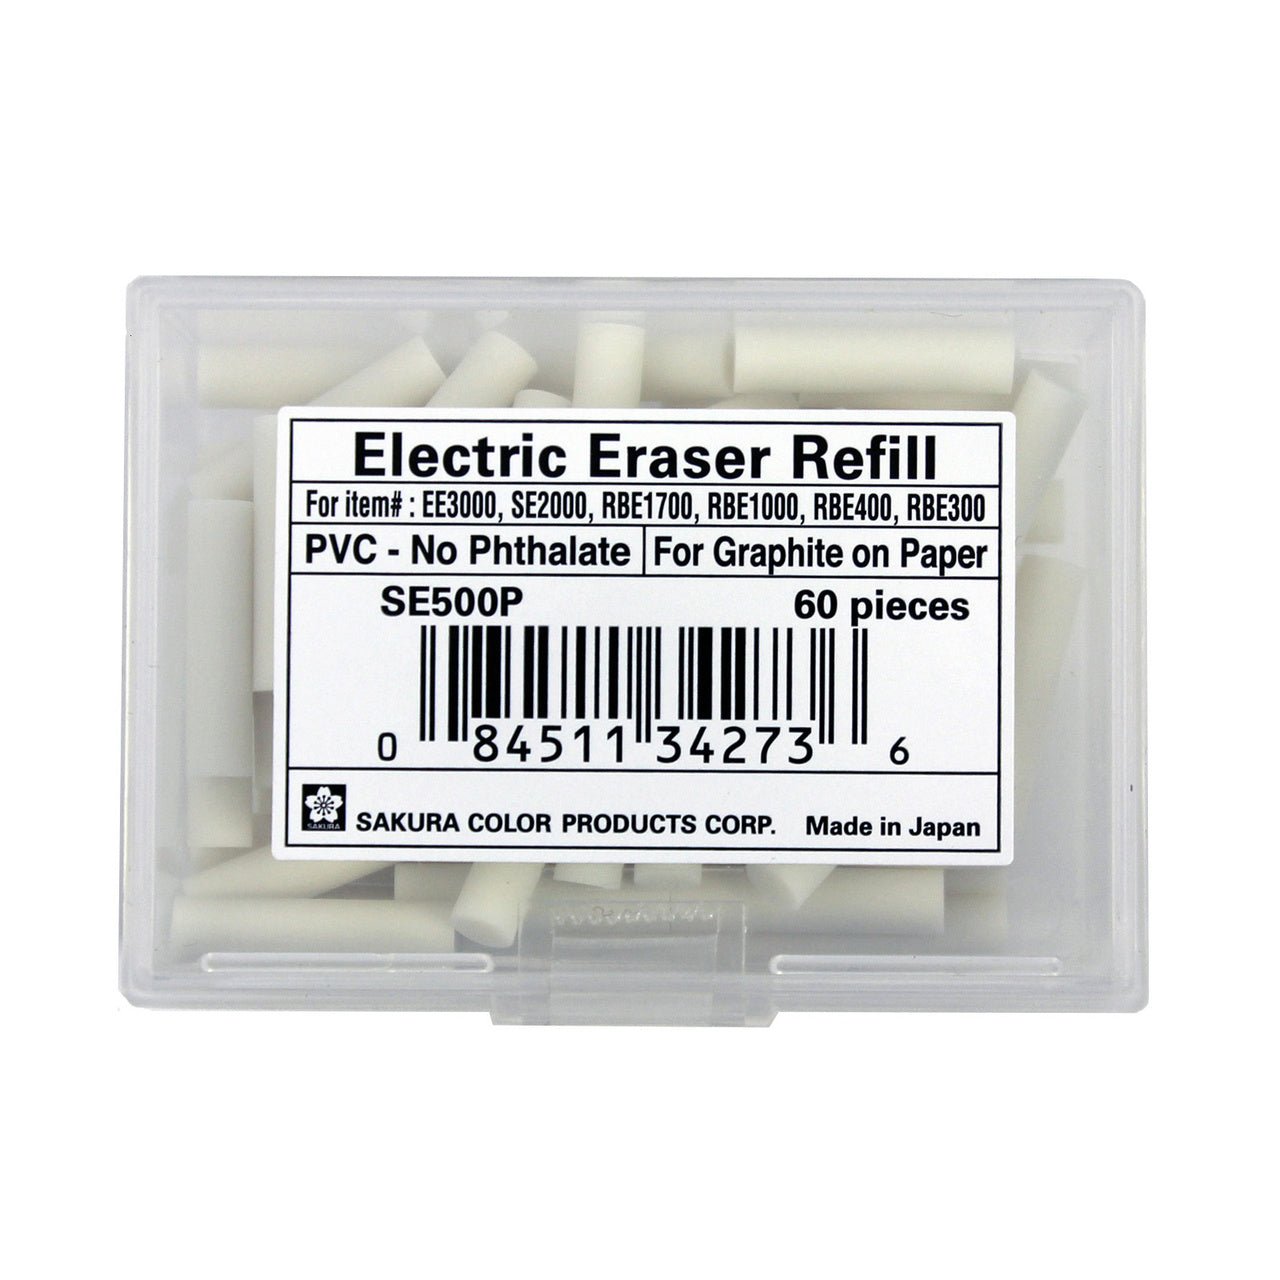 Sakura Electric Eraser Refill White 60-pack - merriartist.com